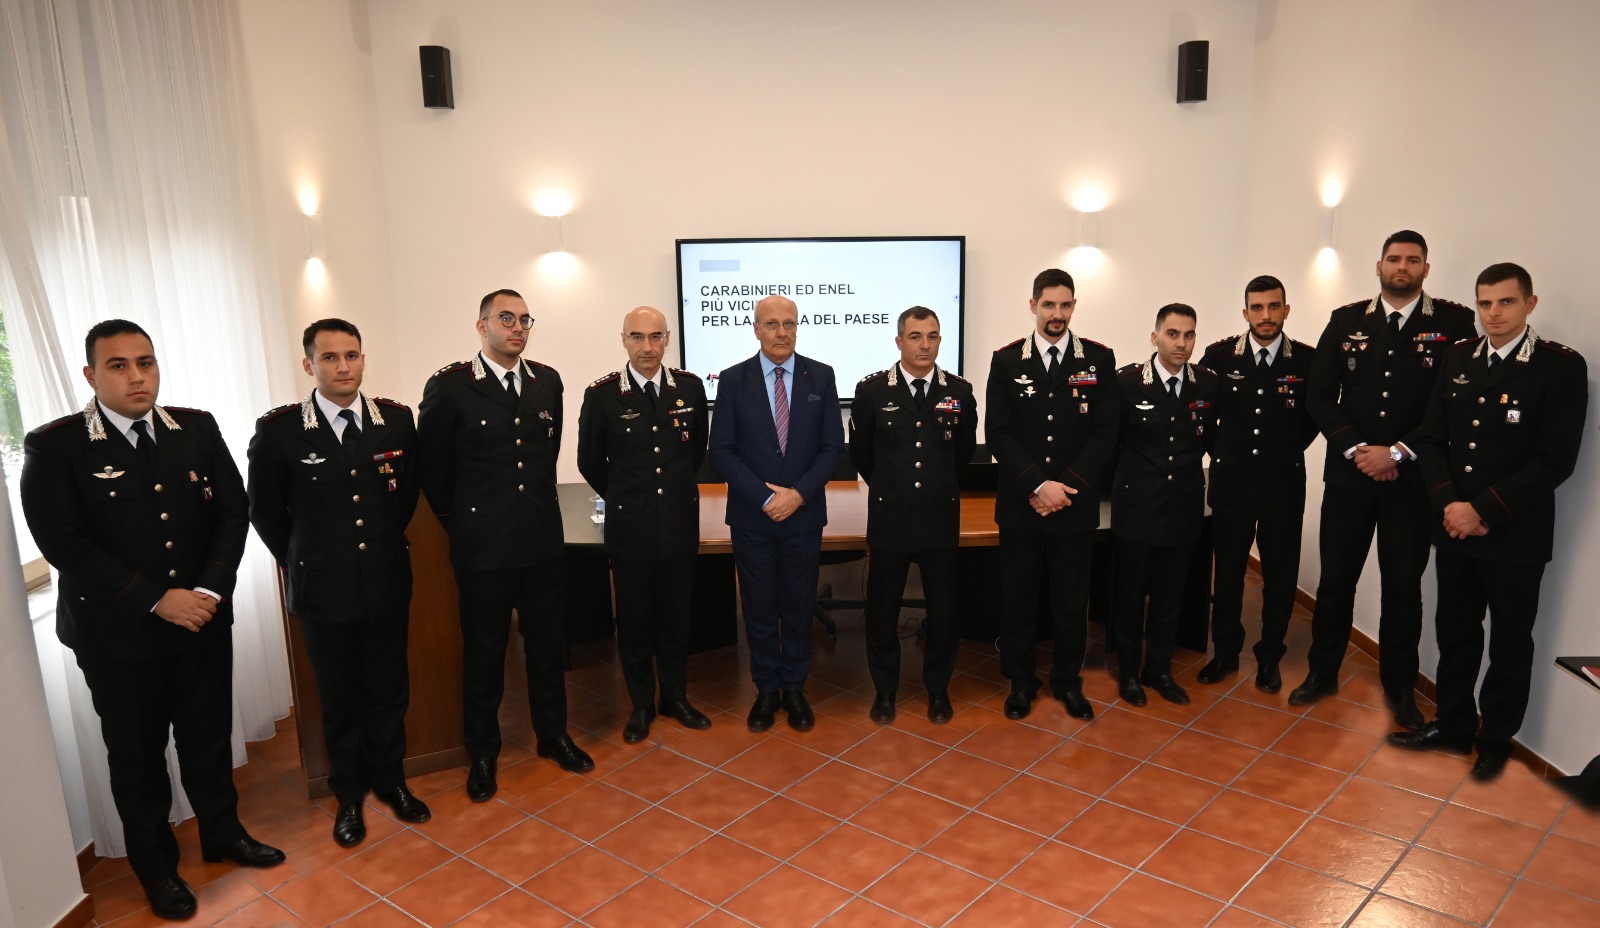 Accordo Carabinieri ed Enel